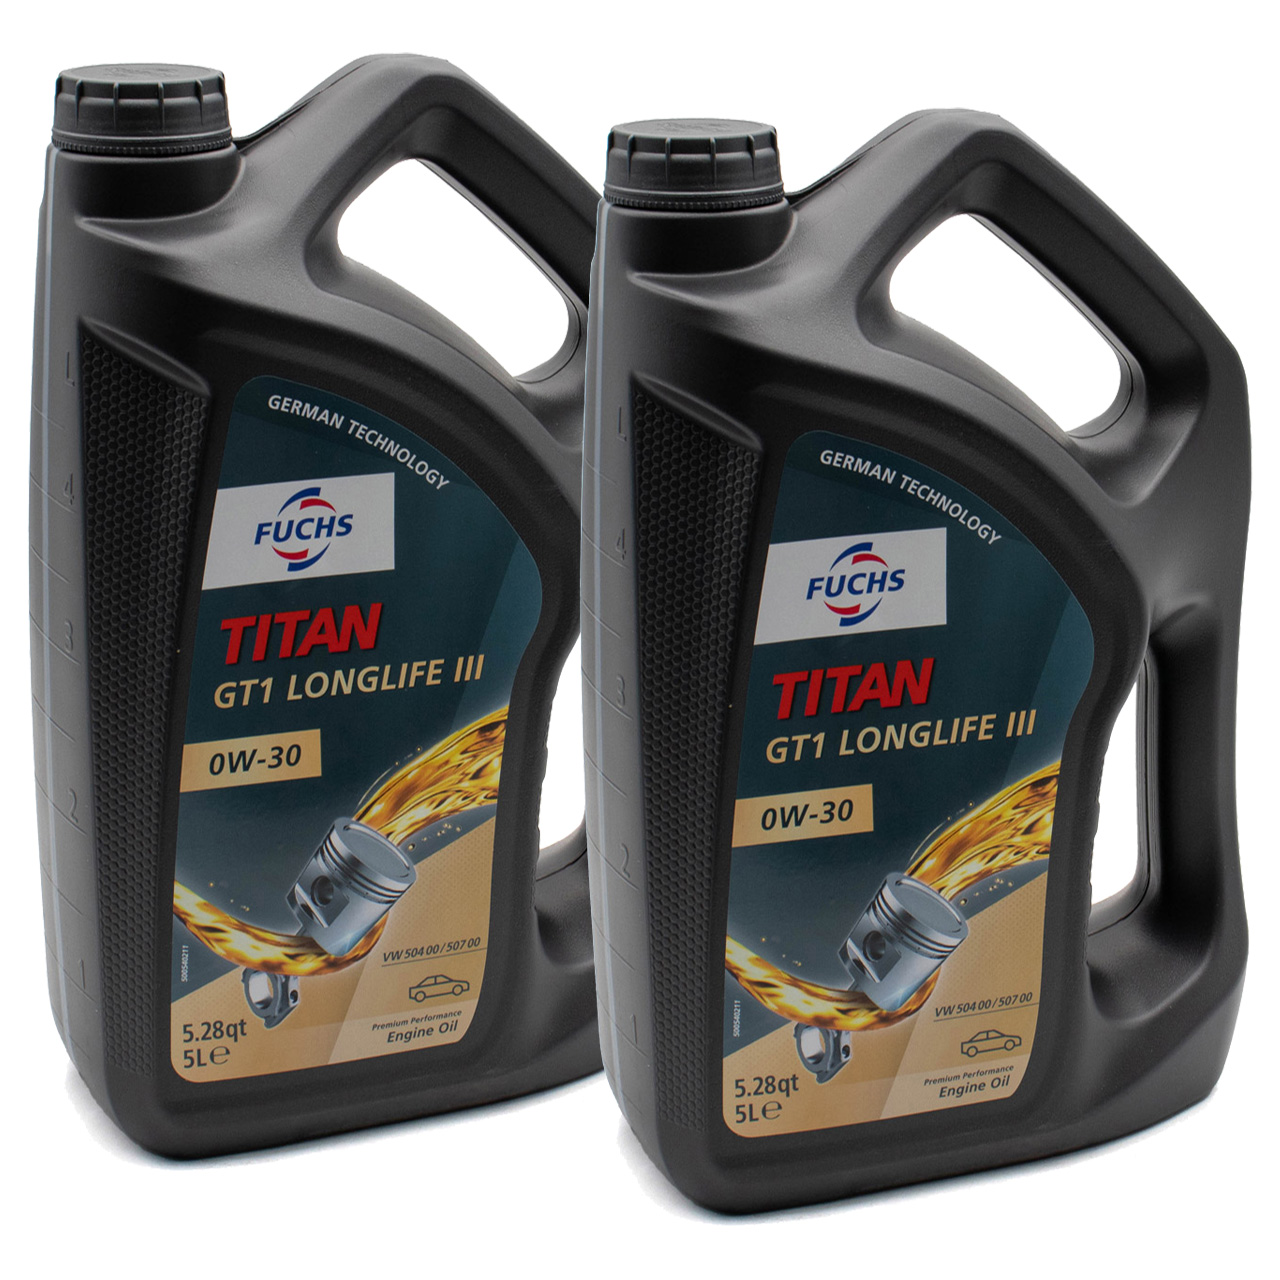 10L 10 Liter FUCHS Motoröl Öl TITAN GT1 LONGLIFE III 0W-30 0W30 VW 504.00/507.00